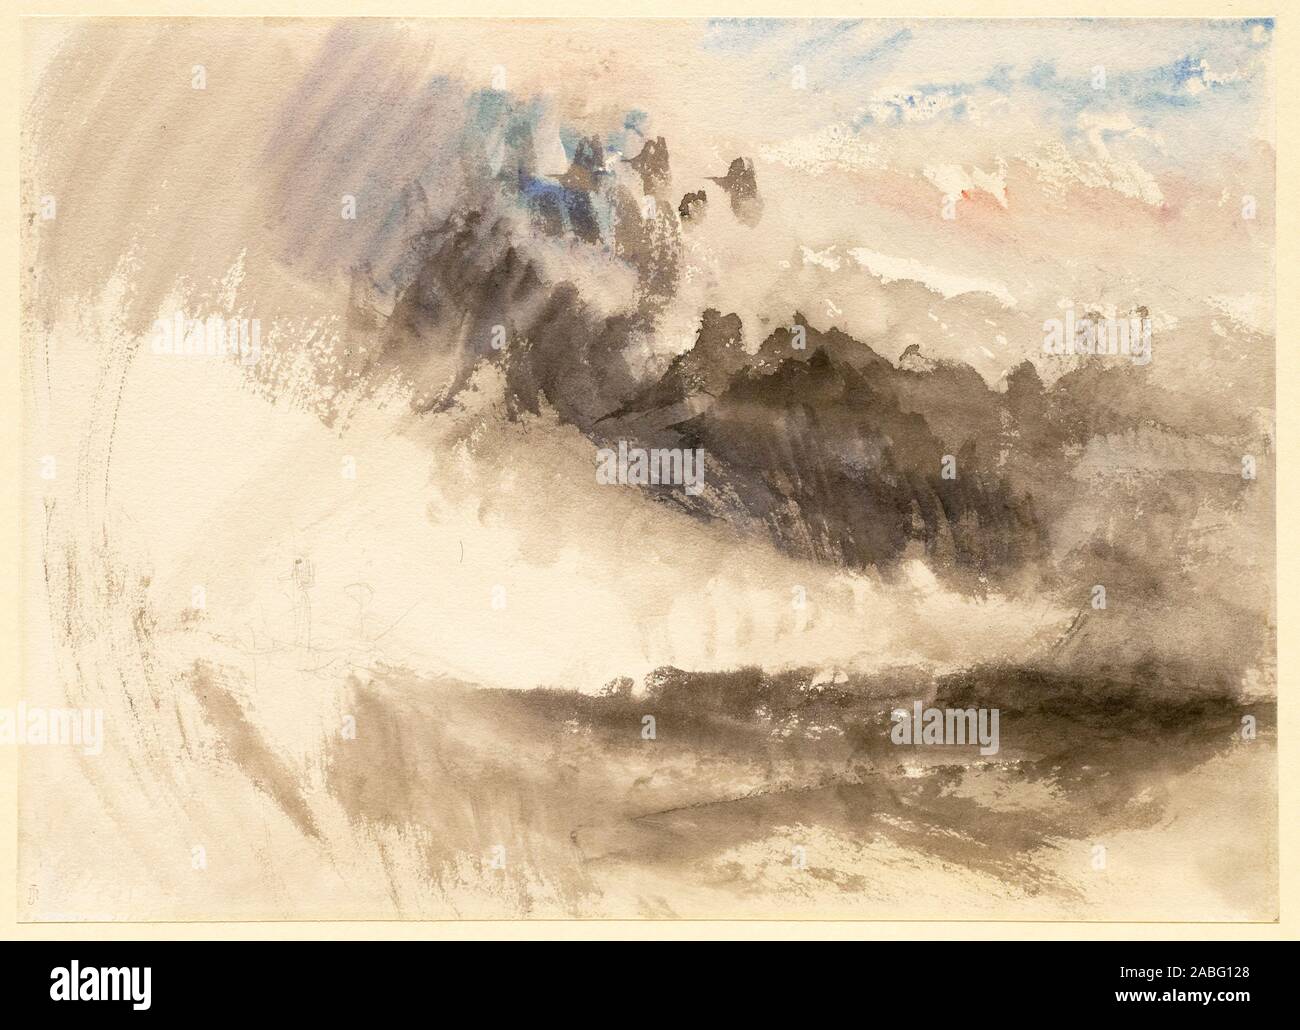 JMW Turner, ciel et mer, paysage peinture, 1826-1829 Banque D'Images